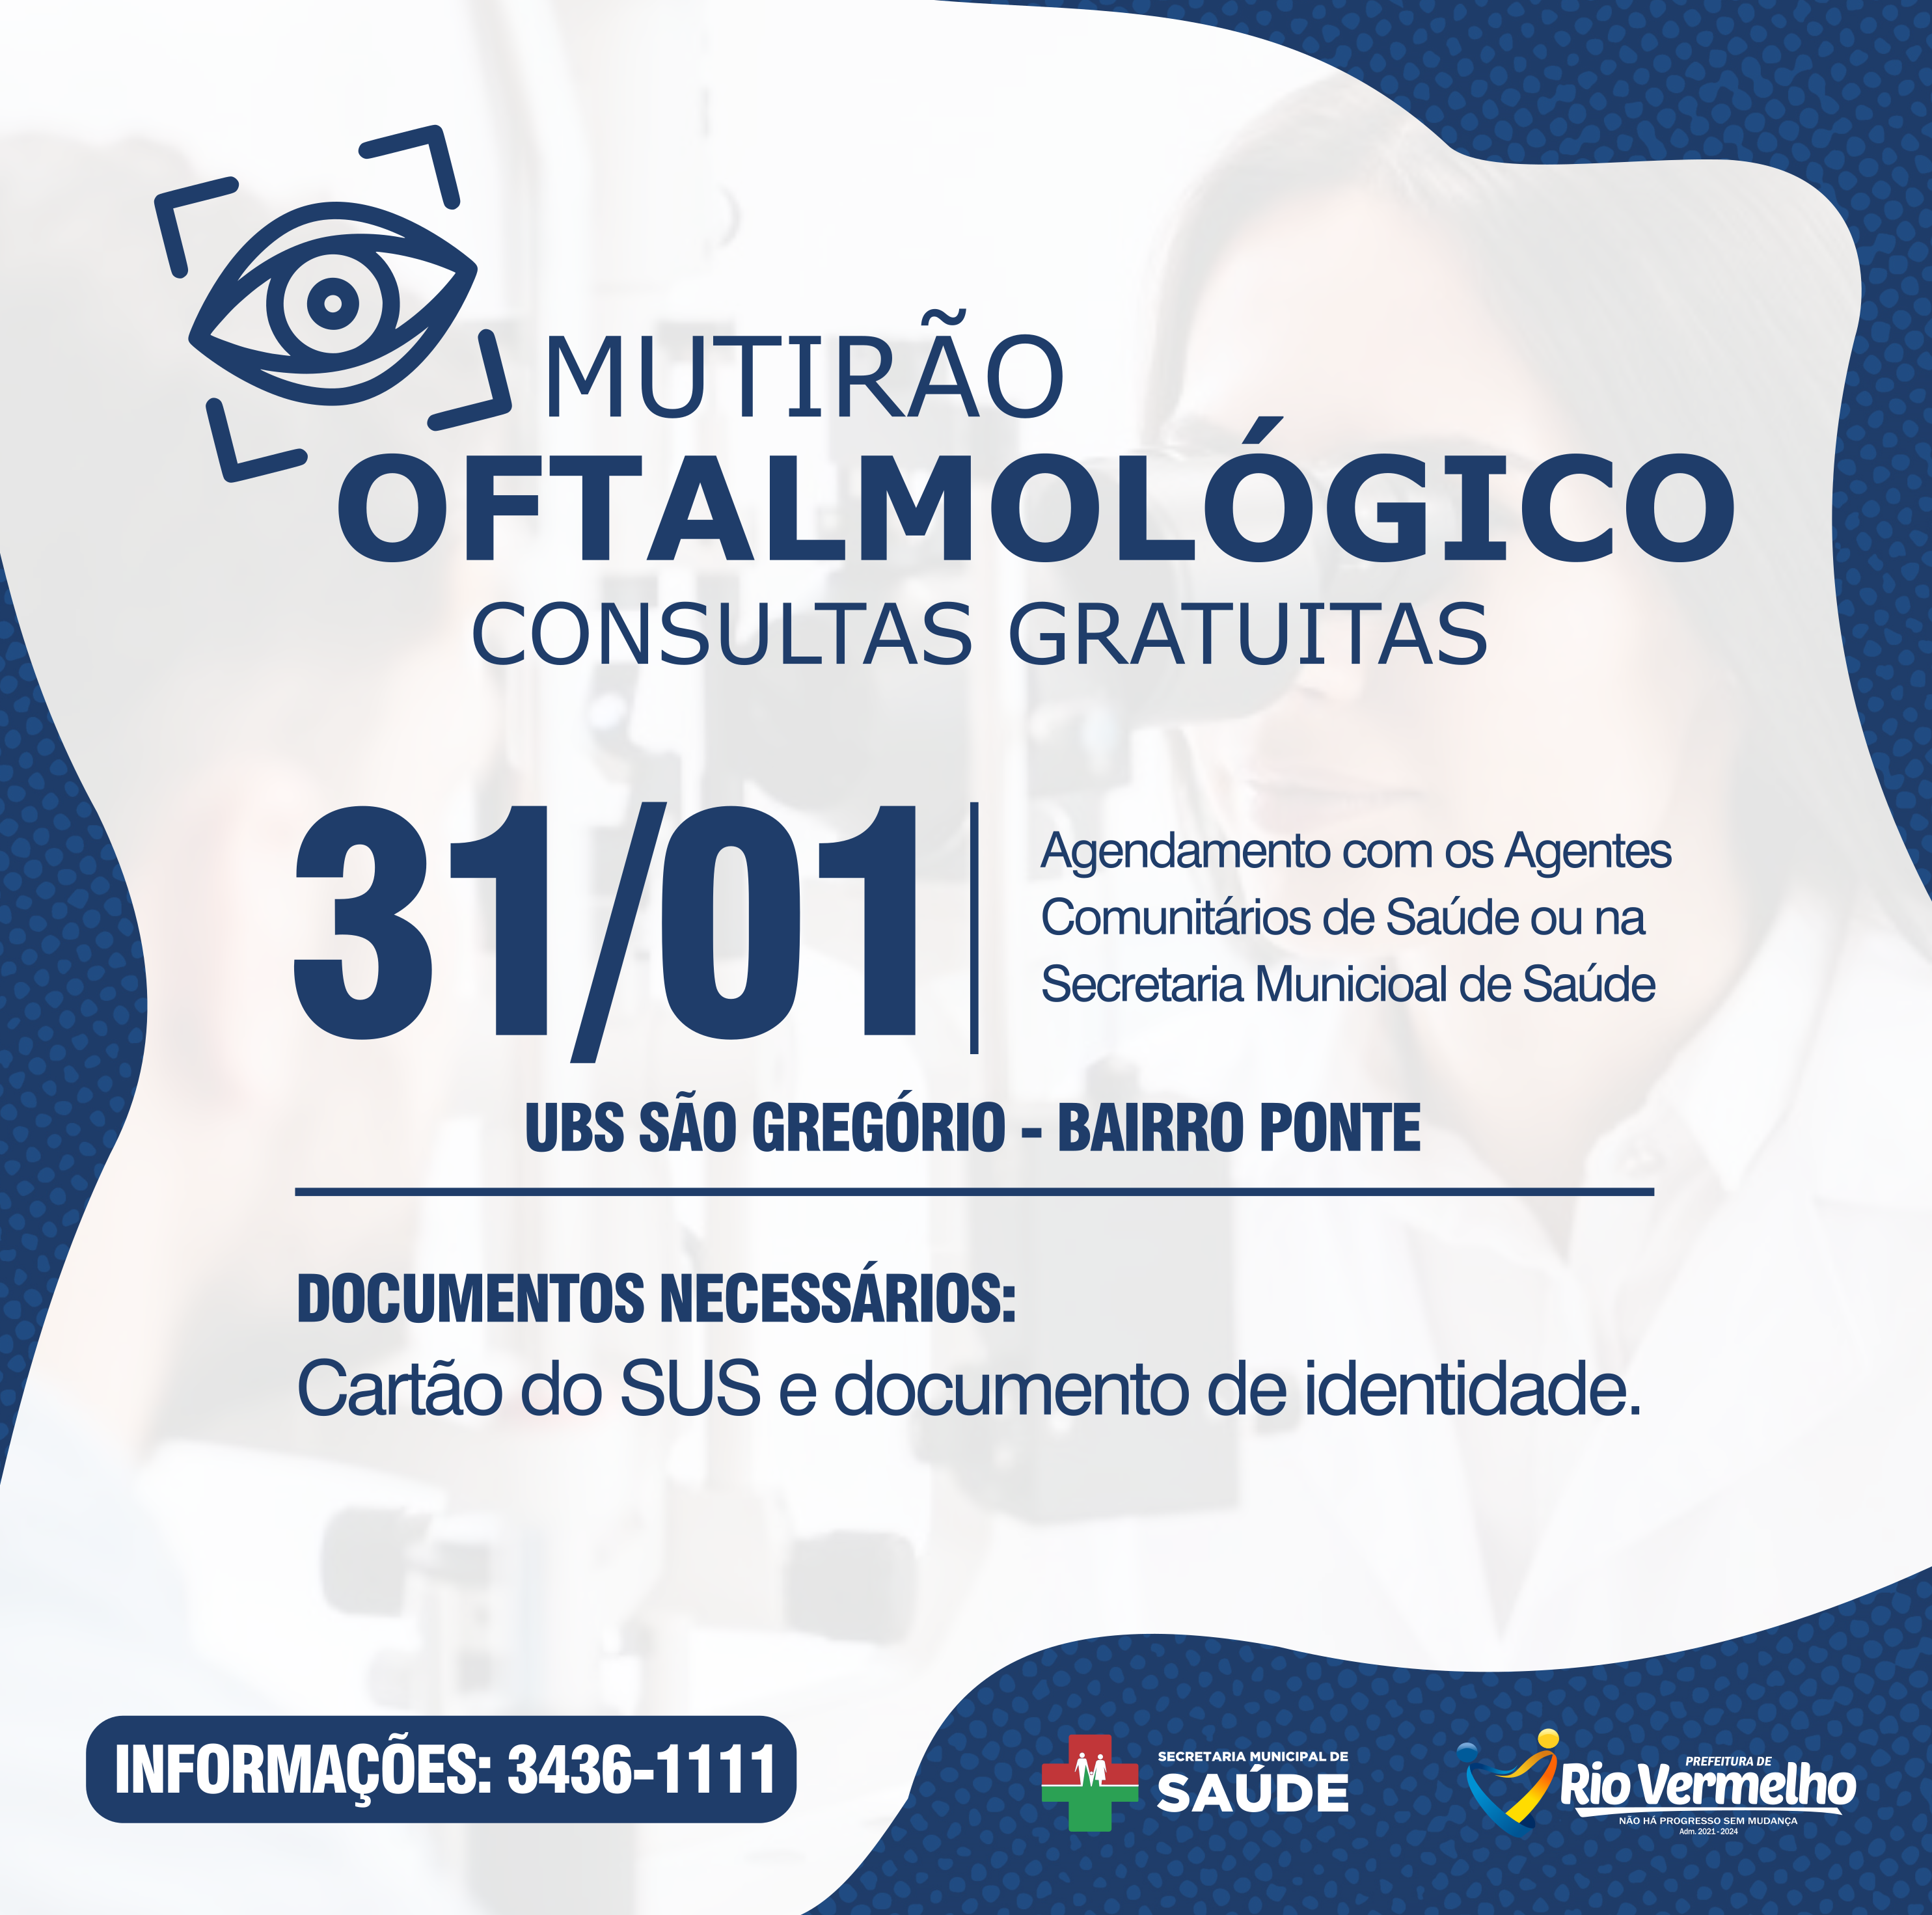 You are currently viewing MUTIRÃO OFTALMOLÓGICO COM CONSULTAS GRATUITAS